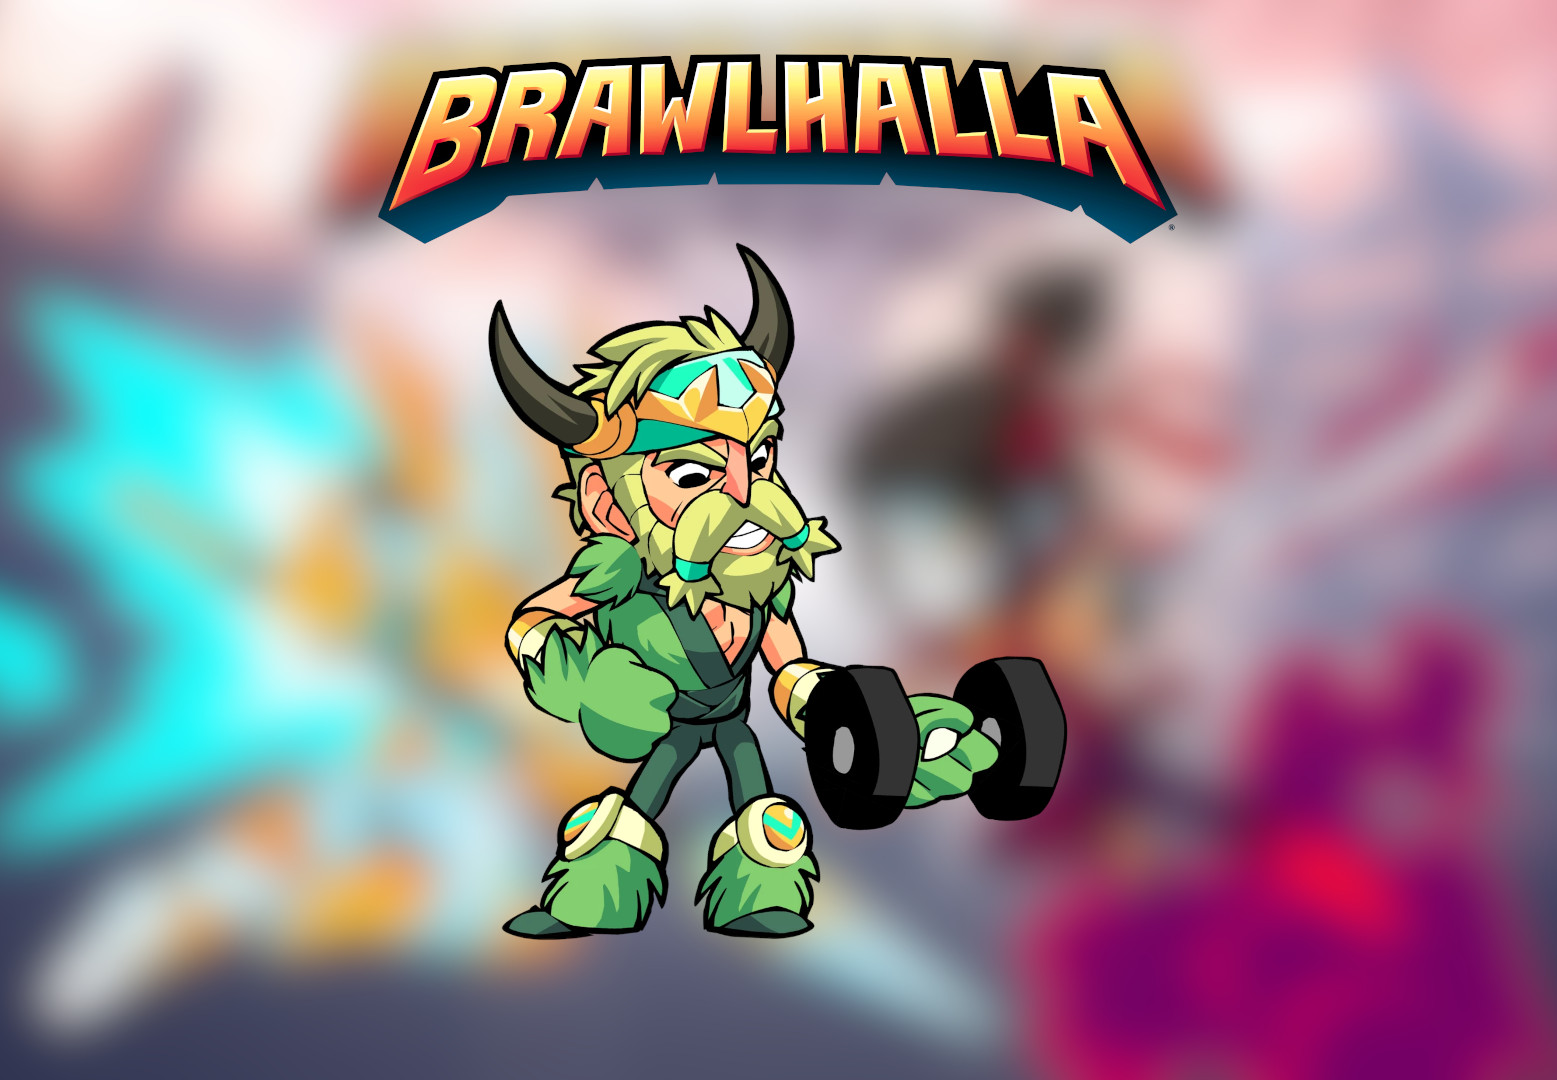 [$ 0.78] Brawlhalla - Dumbbell Curls Emote DLC CD Key